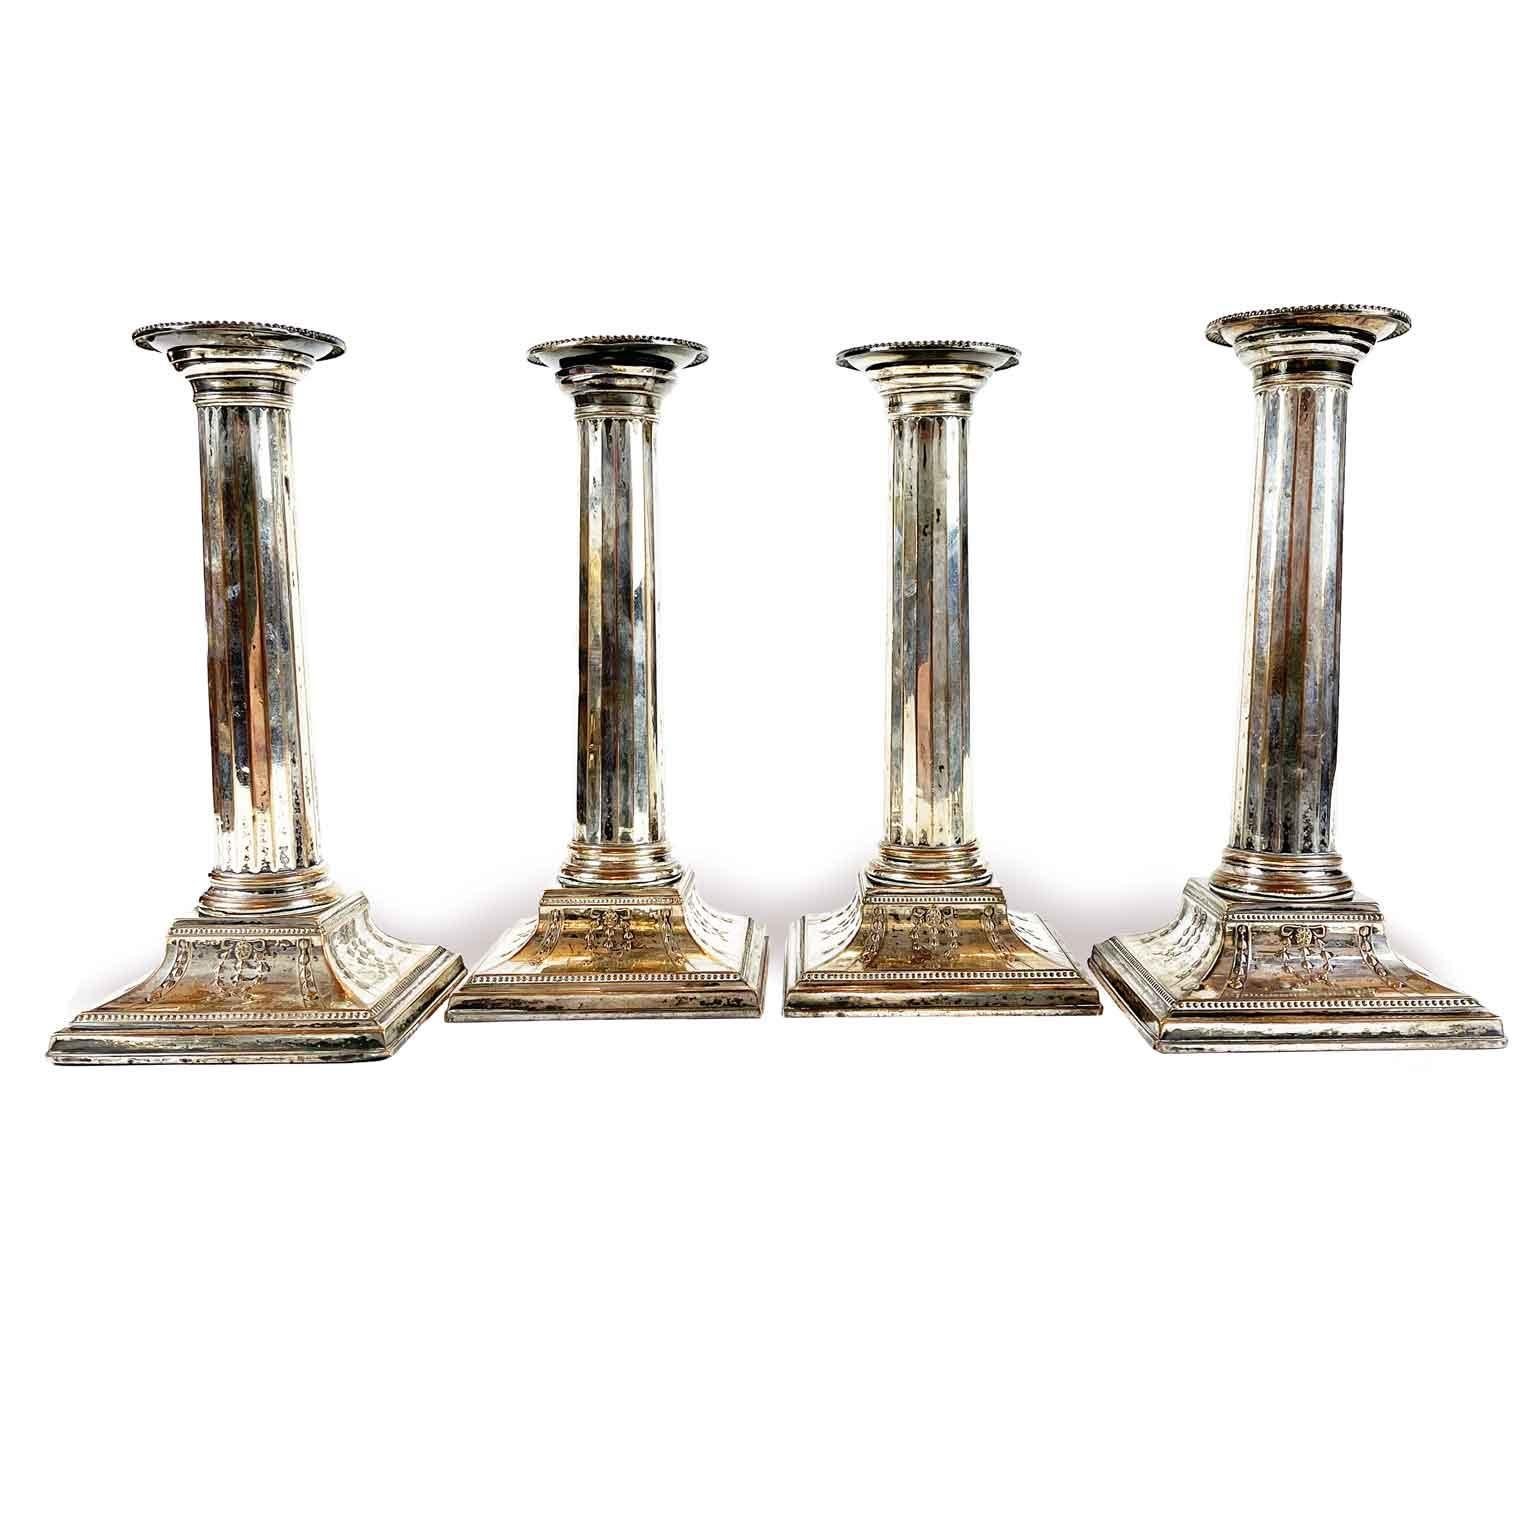 Satz von vier Kerzenhaltern aus versilbertem Kupfer im neoklassischen Stil, Anfang 1900.

Dieses feine Set von Tischkerzenhaltern kann elektrifiziert werden und wird so zu einem eleganten Set von vier Tischlampen. Aufgrund ihrer schlanken